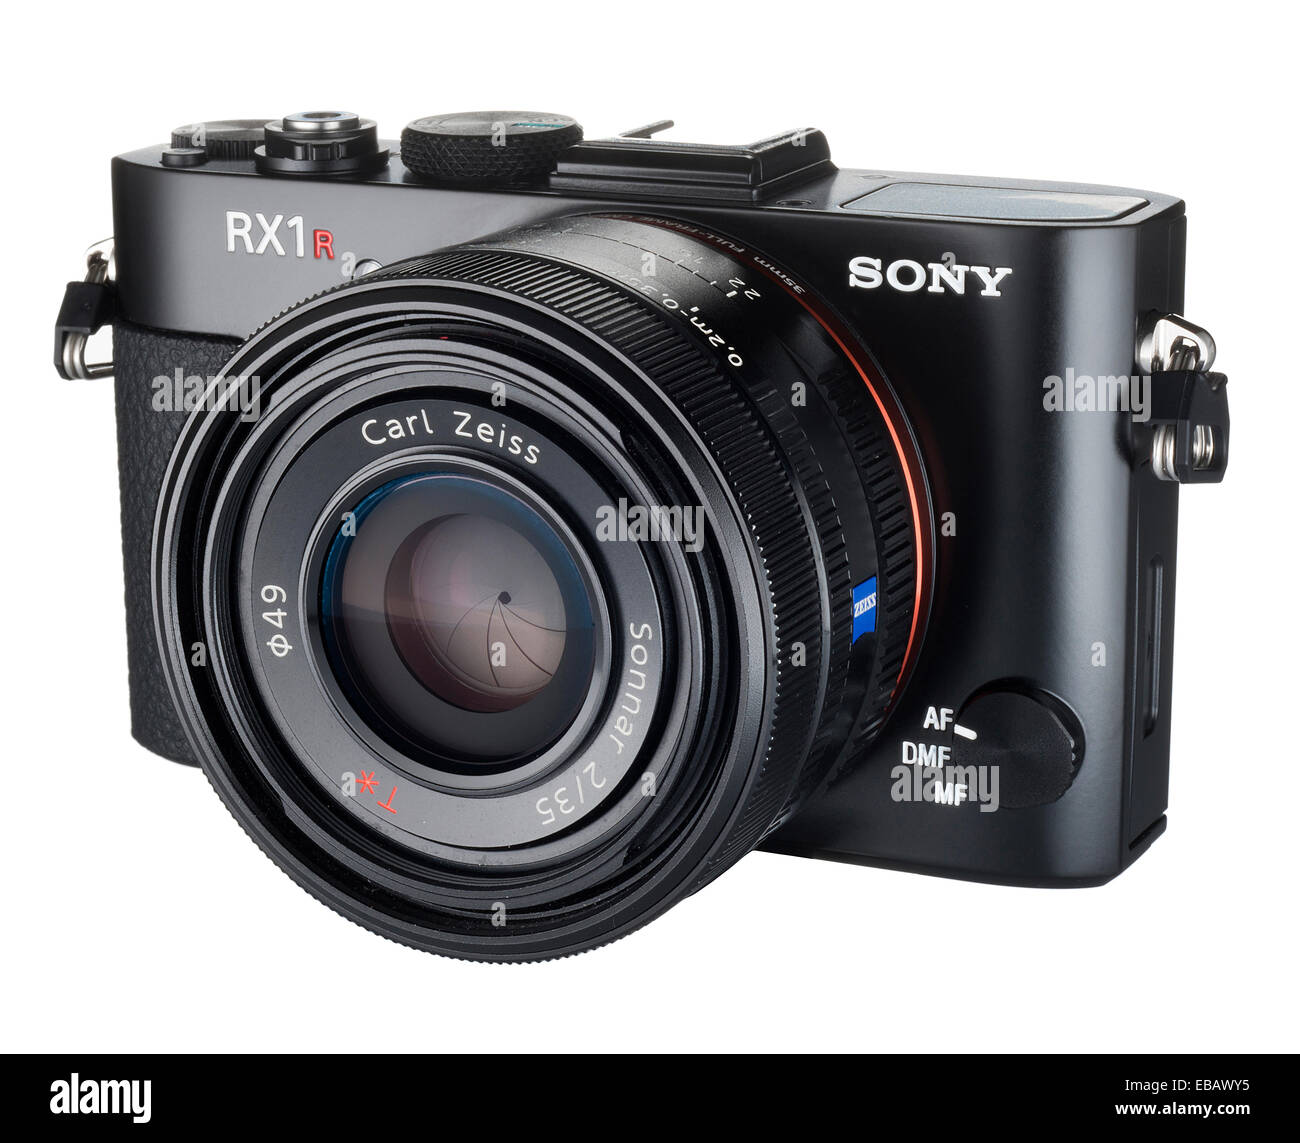 Sony RX1R digital compacta con sensor CMOS 35mm y lente Carl Zeiss® Fotografía de Alamy